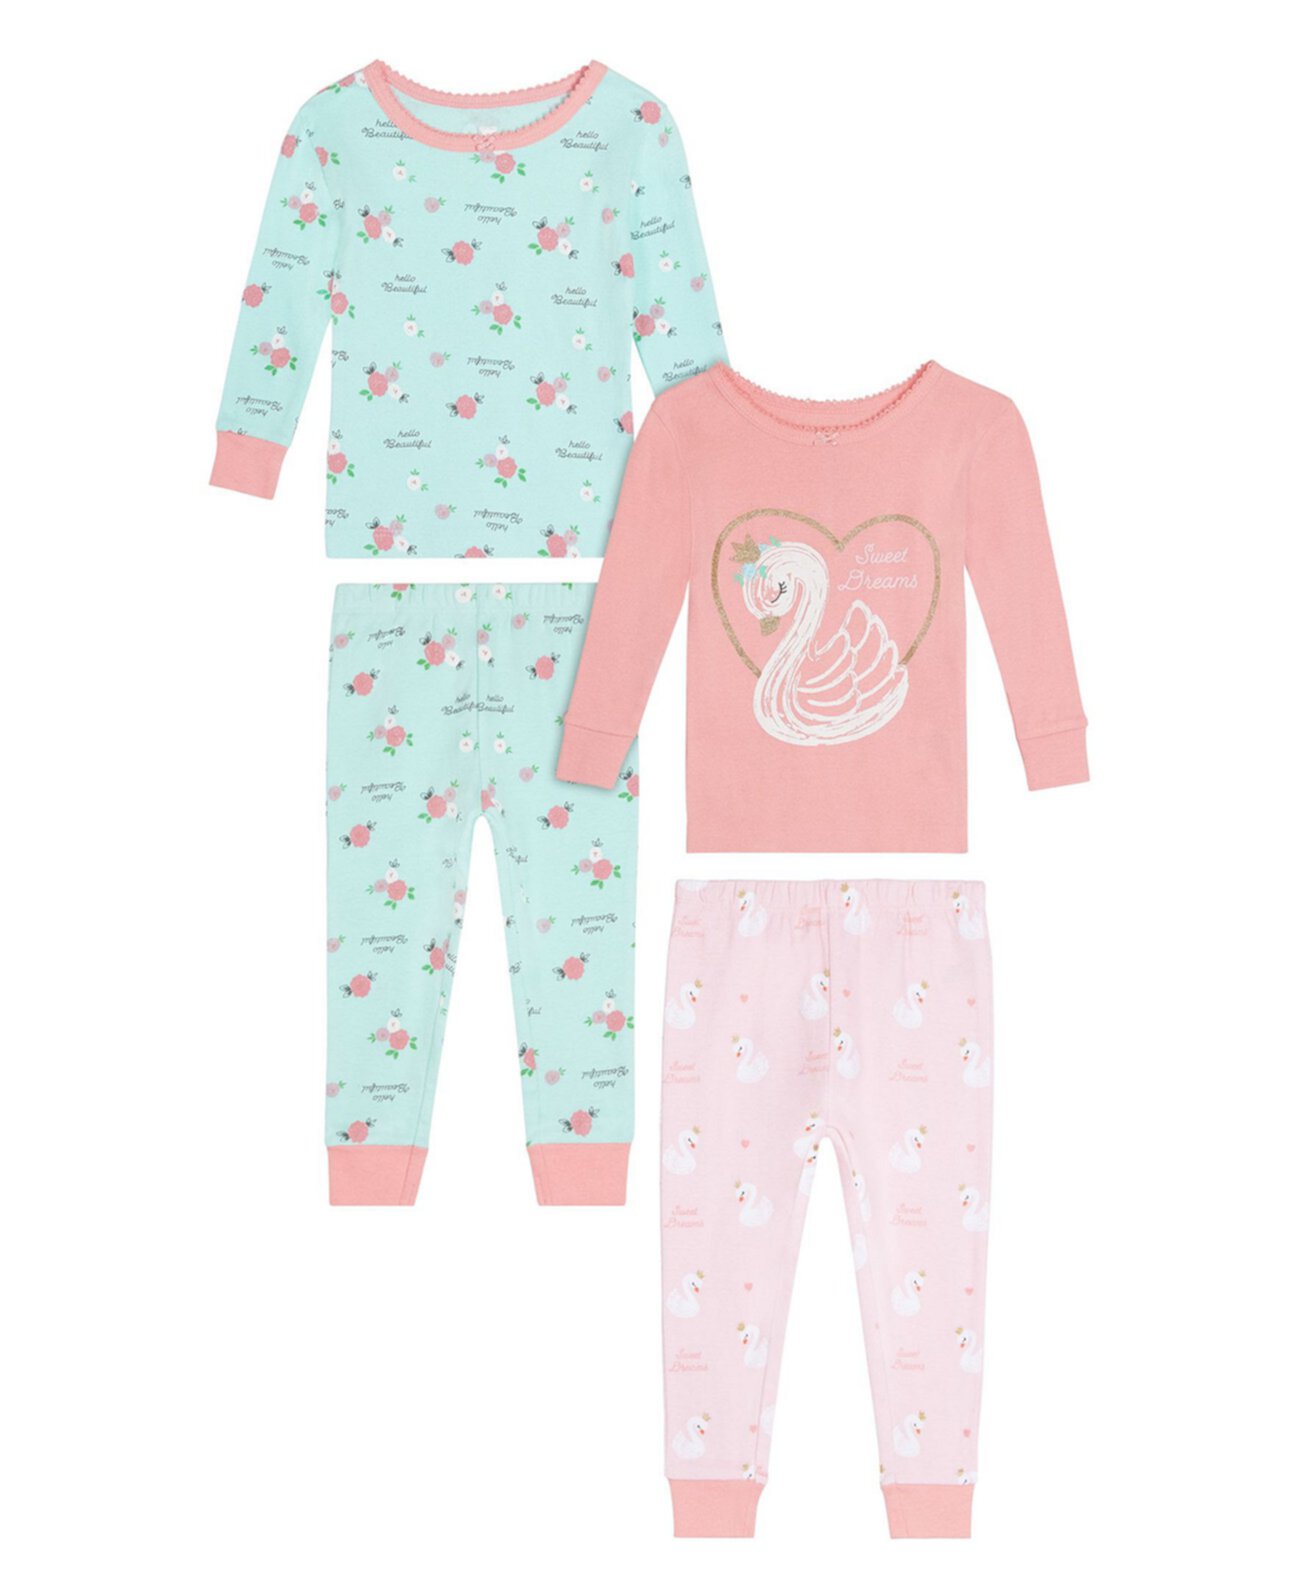 Одежда для сна с изображением лебедя для маленьких девочек, комплект из 4 предметов Koala baby